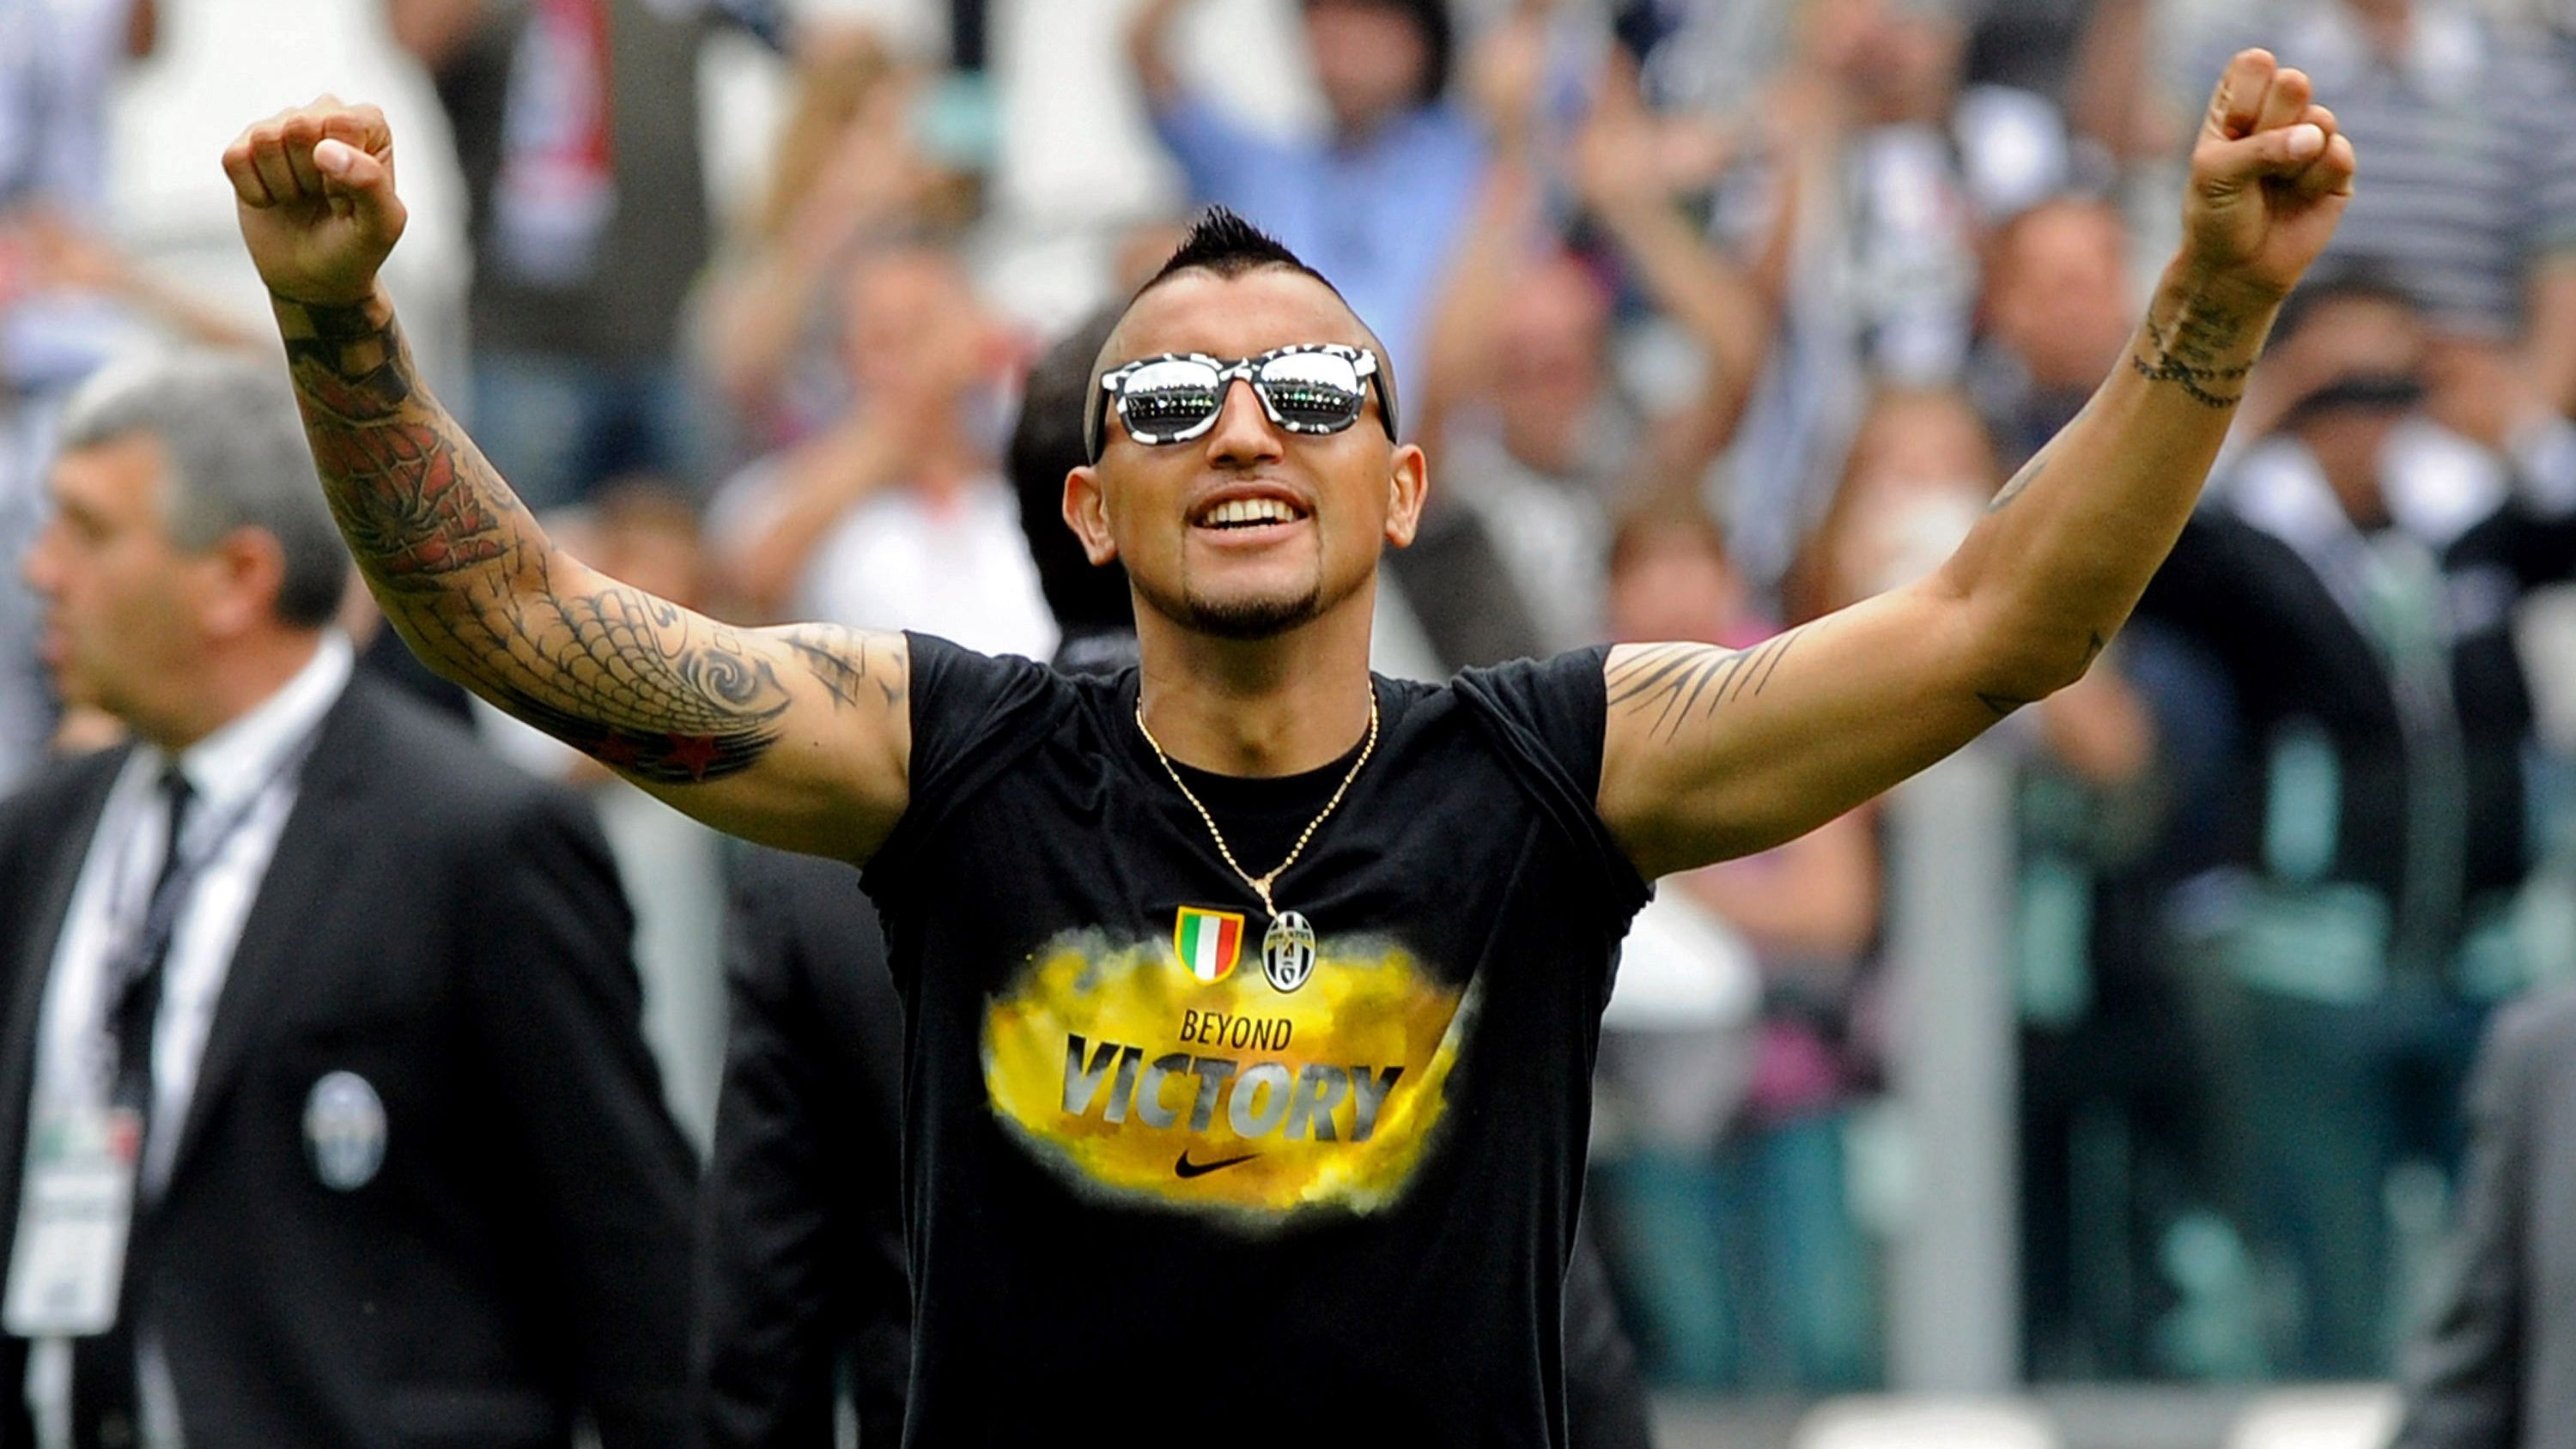 
                <strong>2012/13 Juventus Turin</strong><br>
                Auch in seiner zweiten Saison holte Turin den Scudetto. Vidal wurde von den Fans auf der Klub-Website zum Spieler des Jahres gekürt.
              